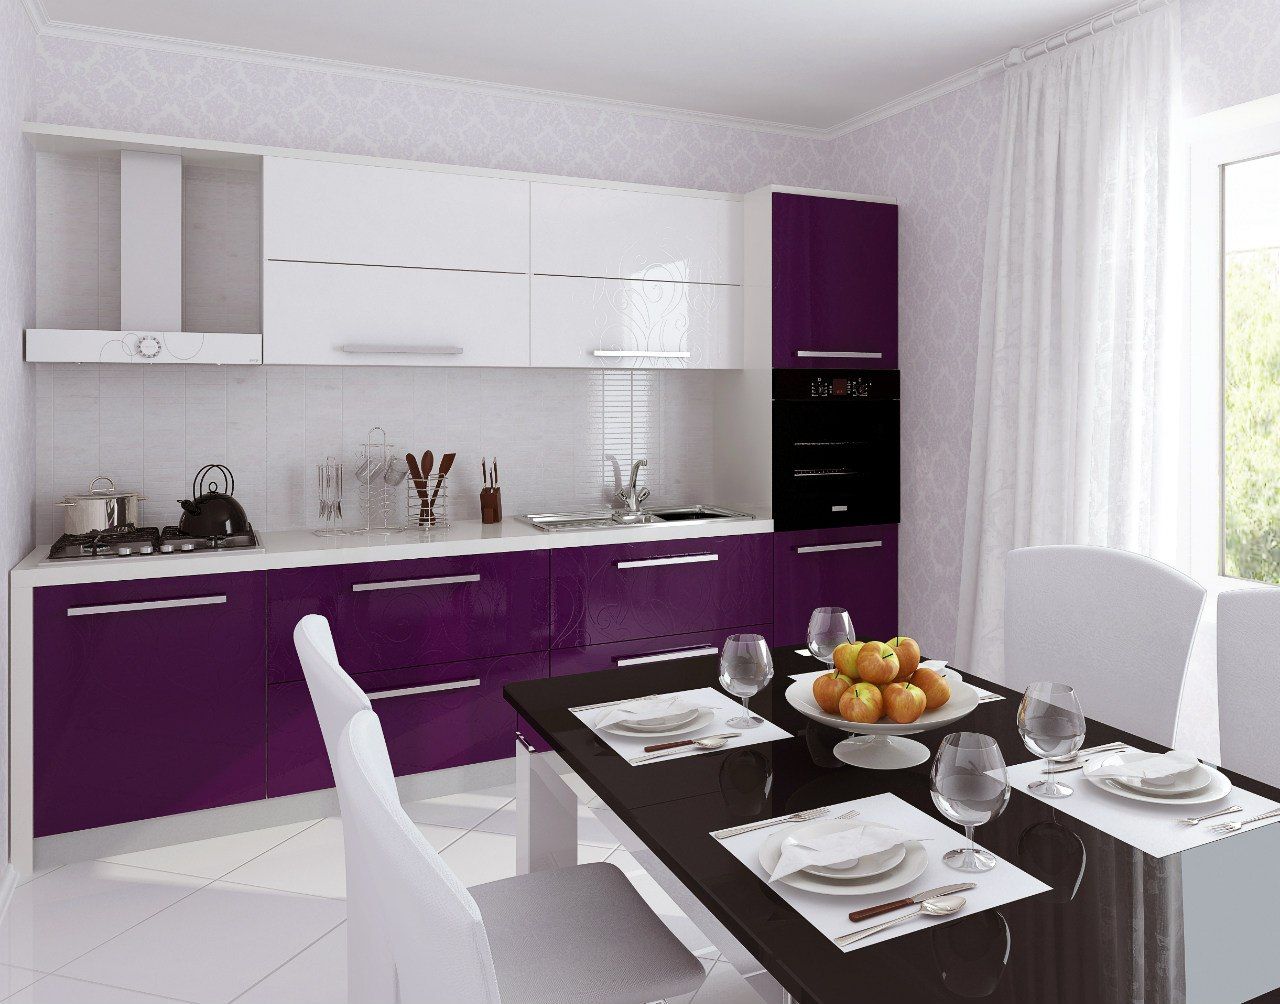 Interior dapur putih dengan warna dominan.